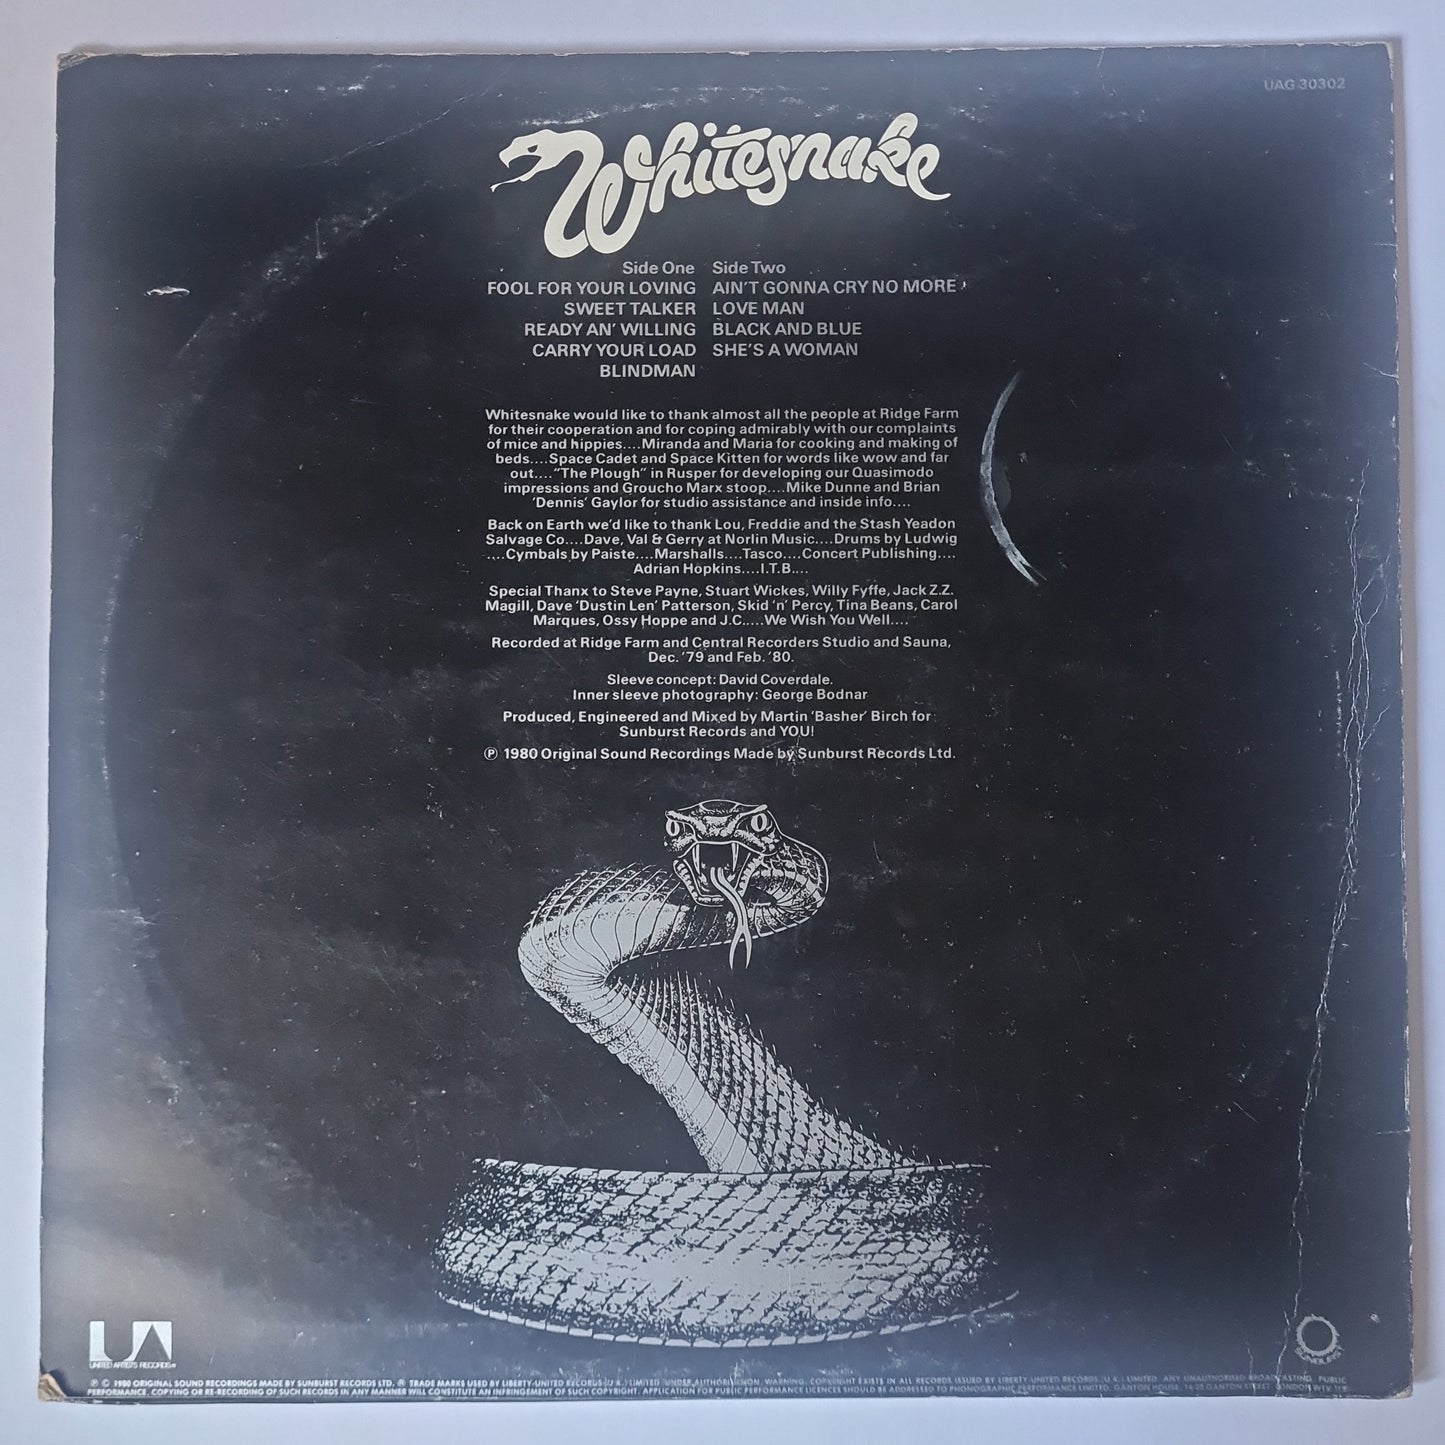 Whitesnake – Ready An' Willing - 1980 - Vinyl Record